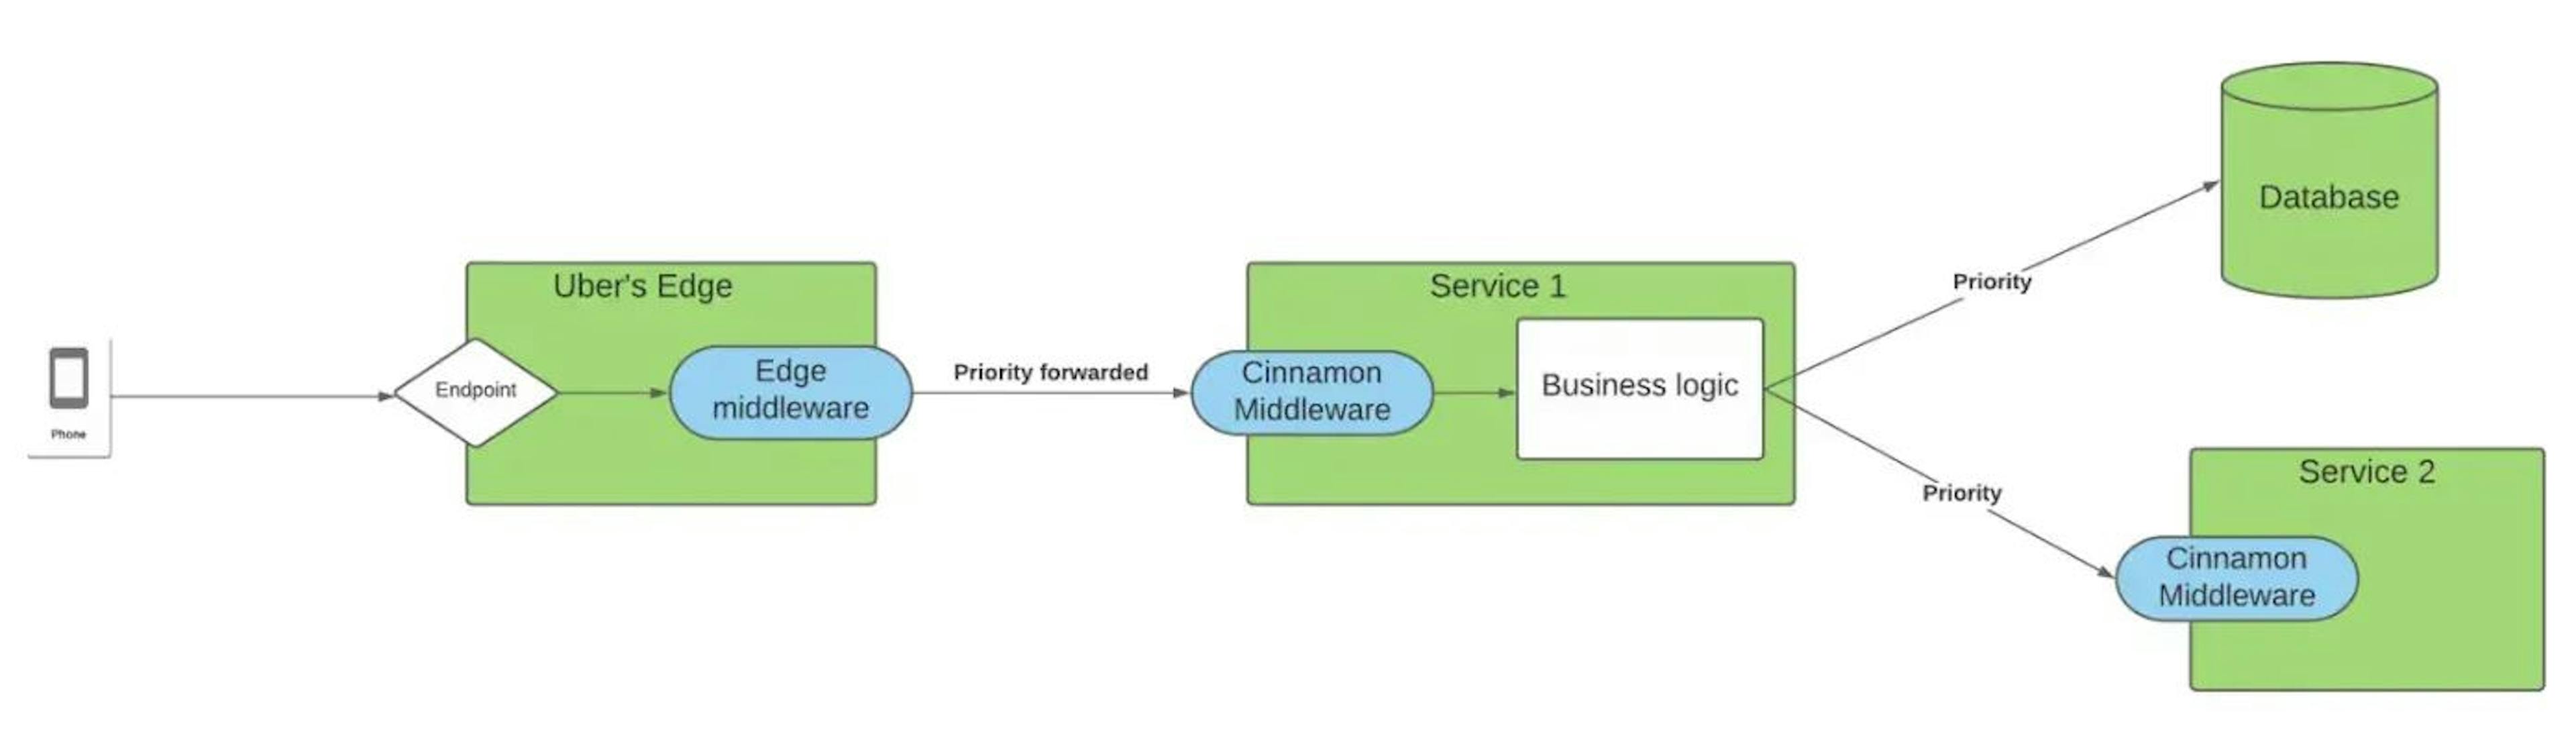 Sơ đồ về cách Cinnamon phù hợp với mạng lưới dịch vụ tại Uber. (từ bài báo Uber đã đề cập trước đó).